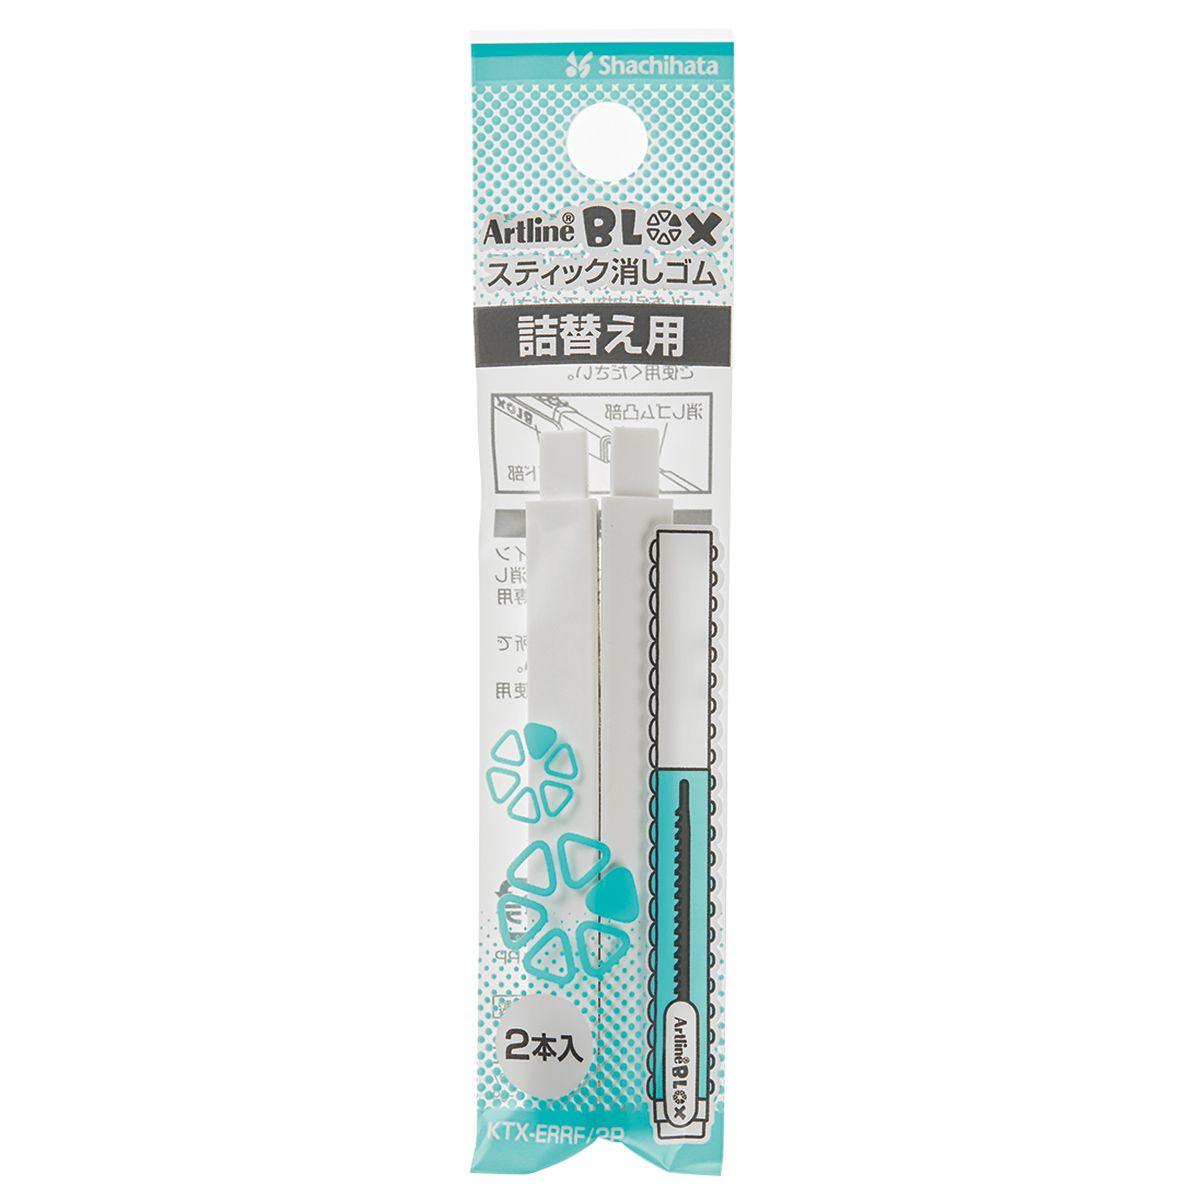 (Pre-Order) SHACHIHATA Artline BLOX Stick Eraser KTX-ER KTX-ERRF/2P - CHL-STORE 